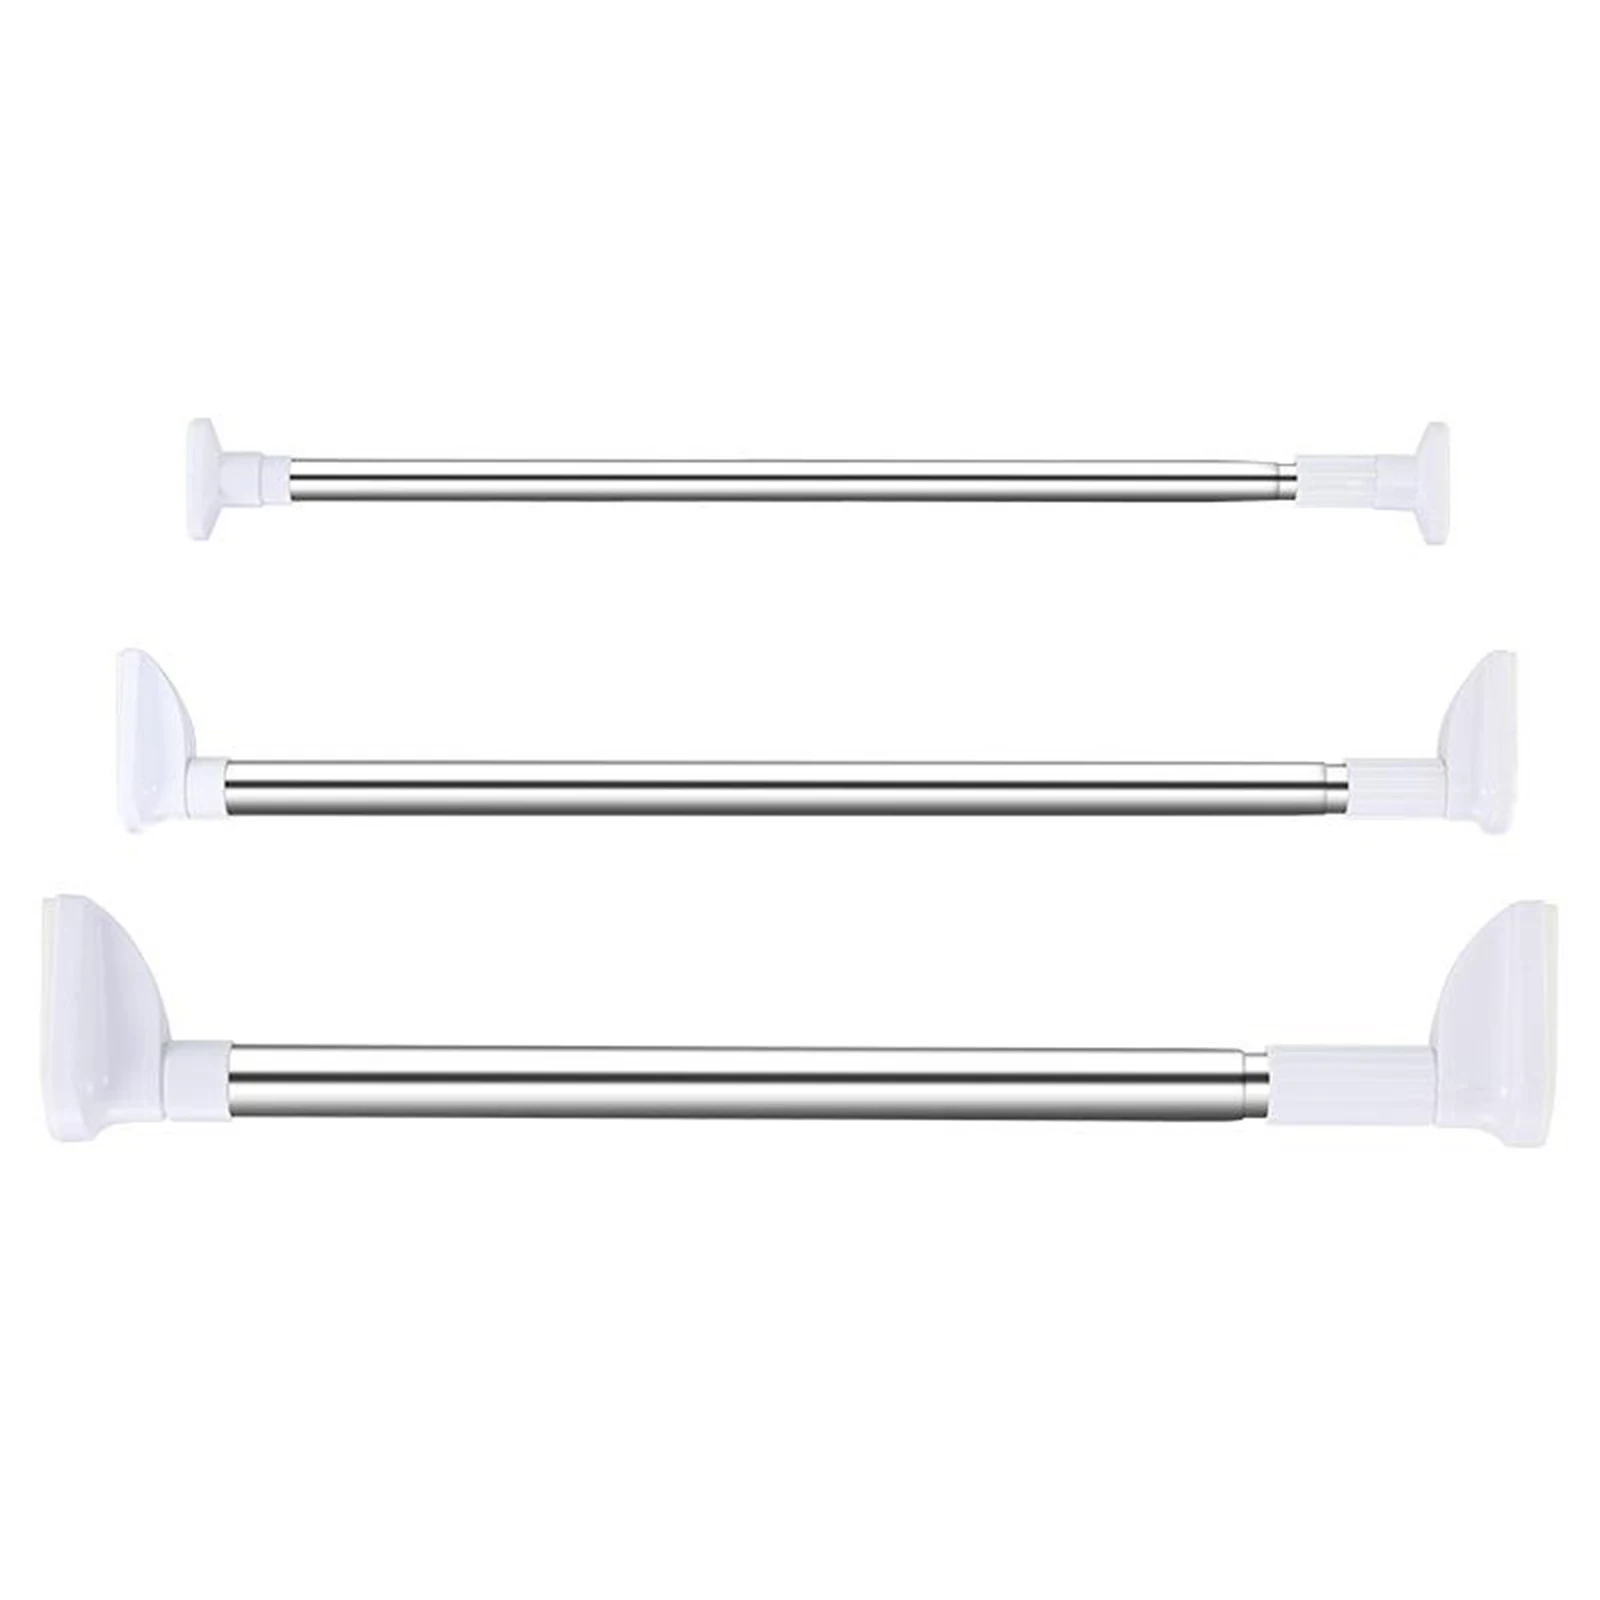 Tension Curtain Rod Adjustable Rail Pole Net Rods Anti-Slip Steel 50-160cm